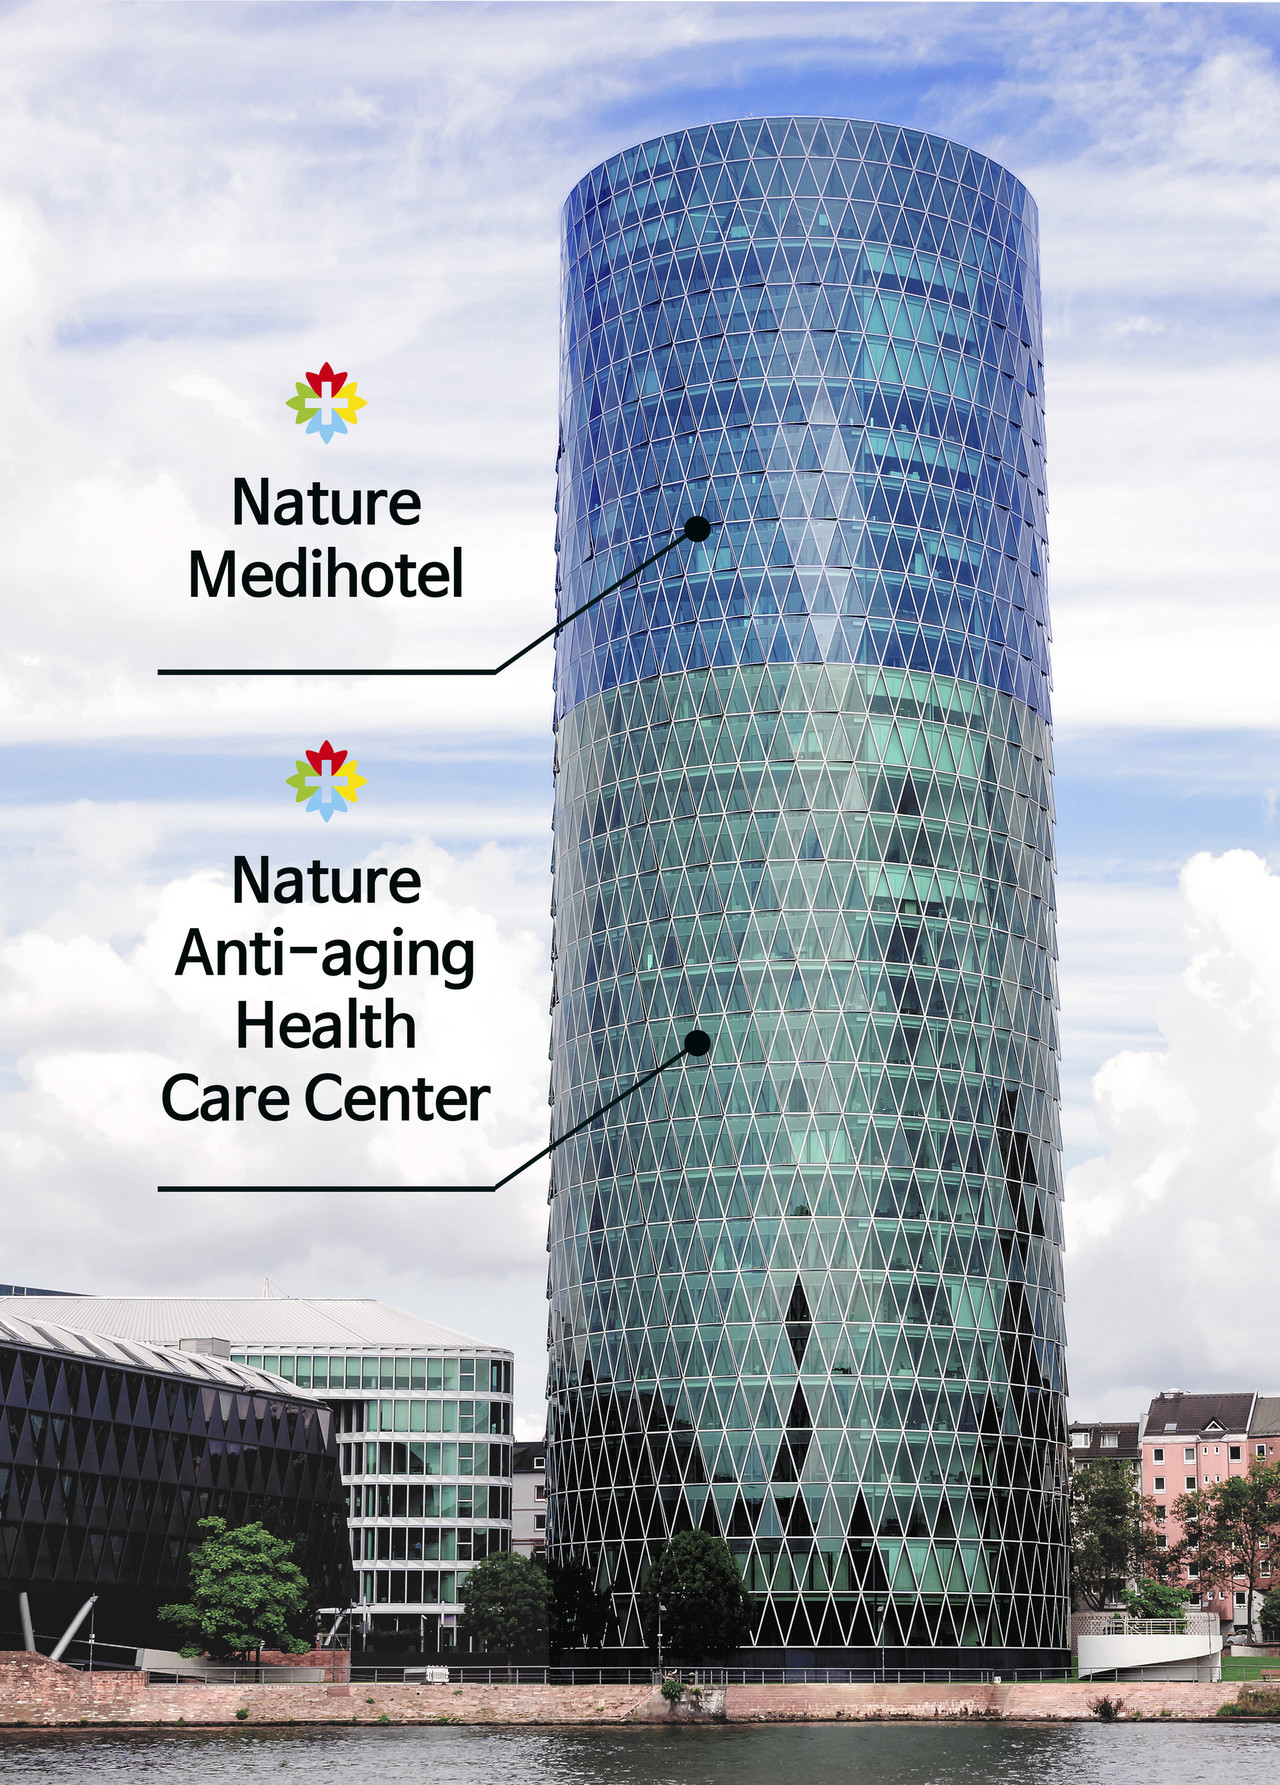 빌딩 상부층은 네이처메디호텔이며, 하부층은 종합병원 항노화헬스케어센터로 구성